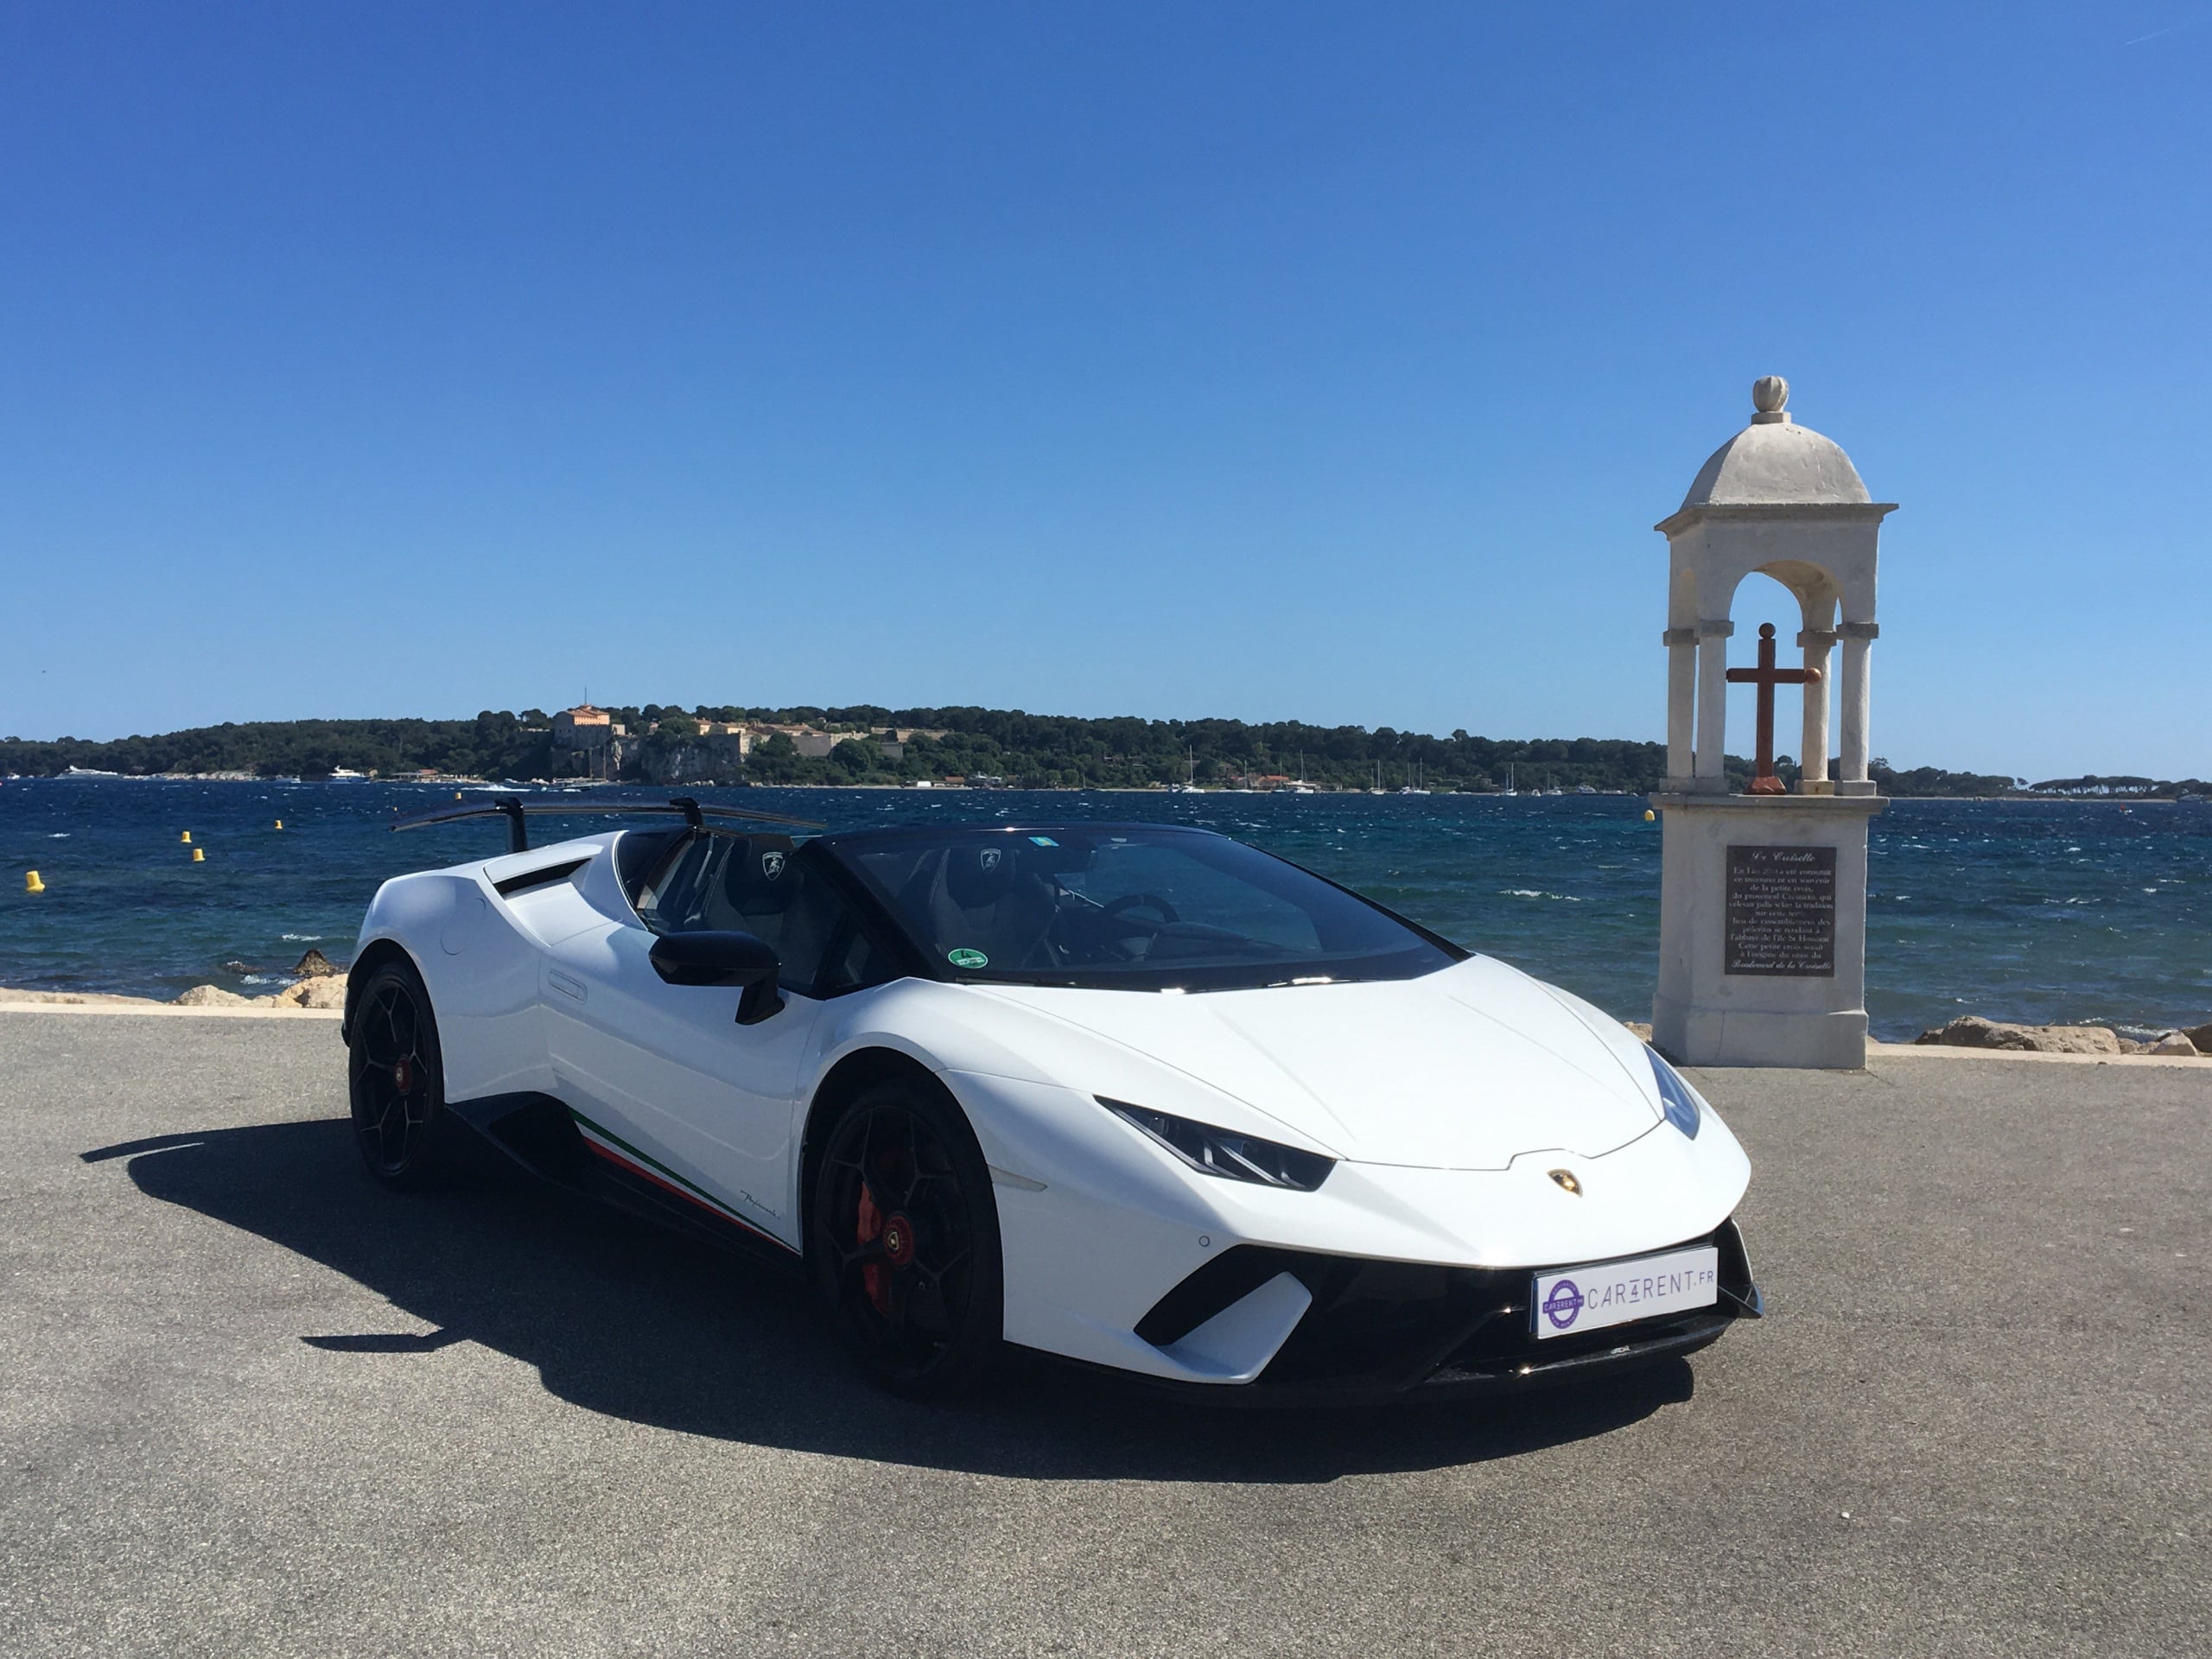 Rent a luxury car Monaco, Rent Sports Car Cannes